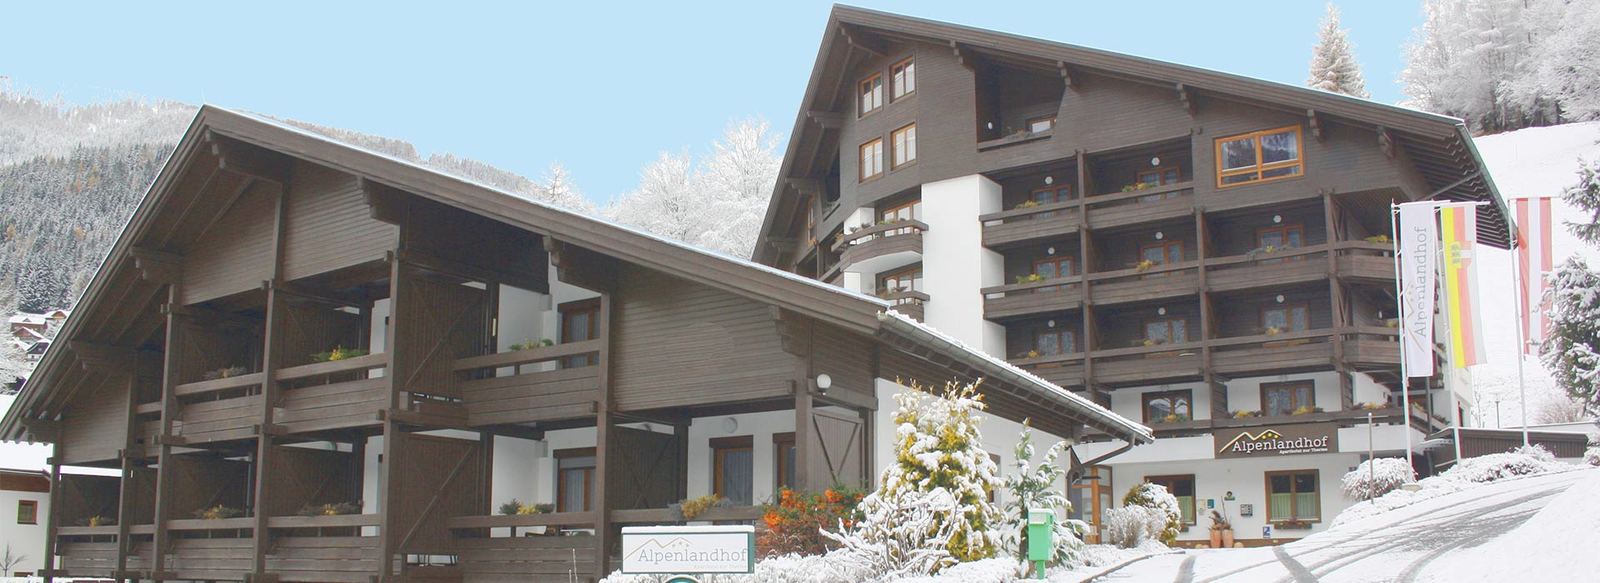 Villaggio turistico in tipico stile alpino